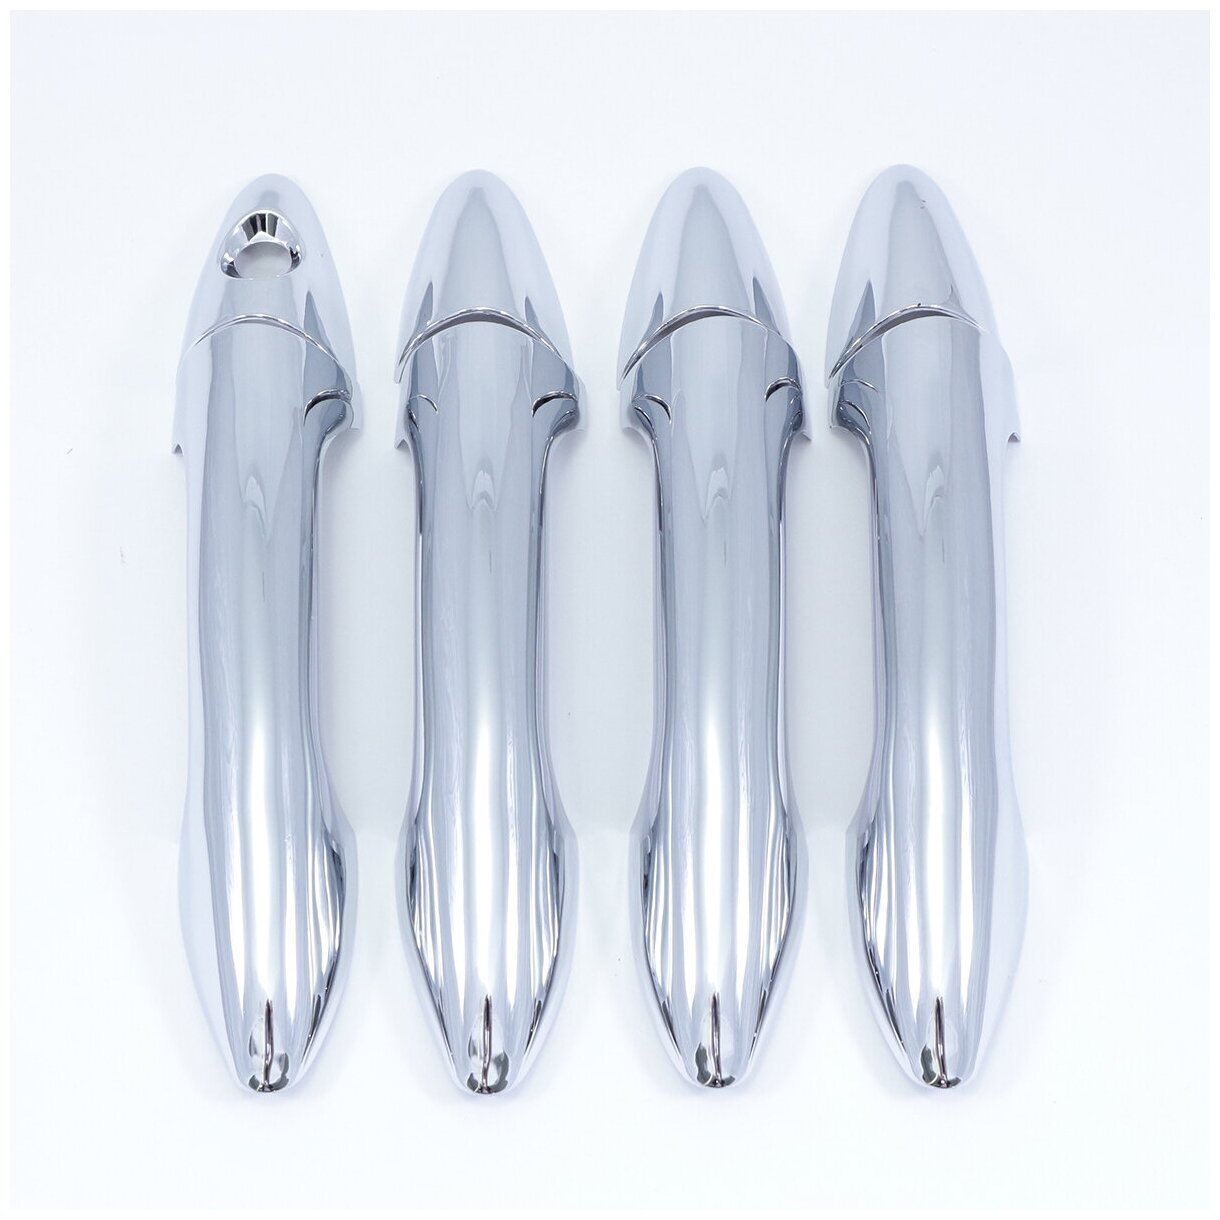 Хромированные накладки на дверные ручки Hyundai Solaris 1 2010+/ Хендай Солярис 1 2010+